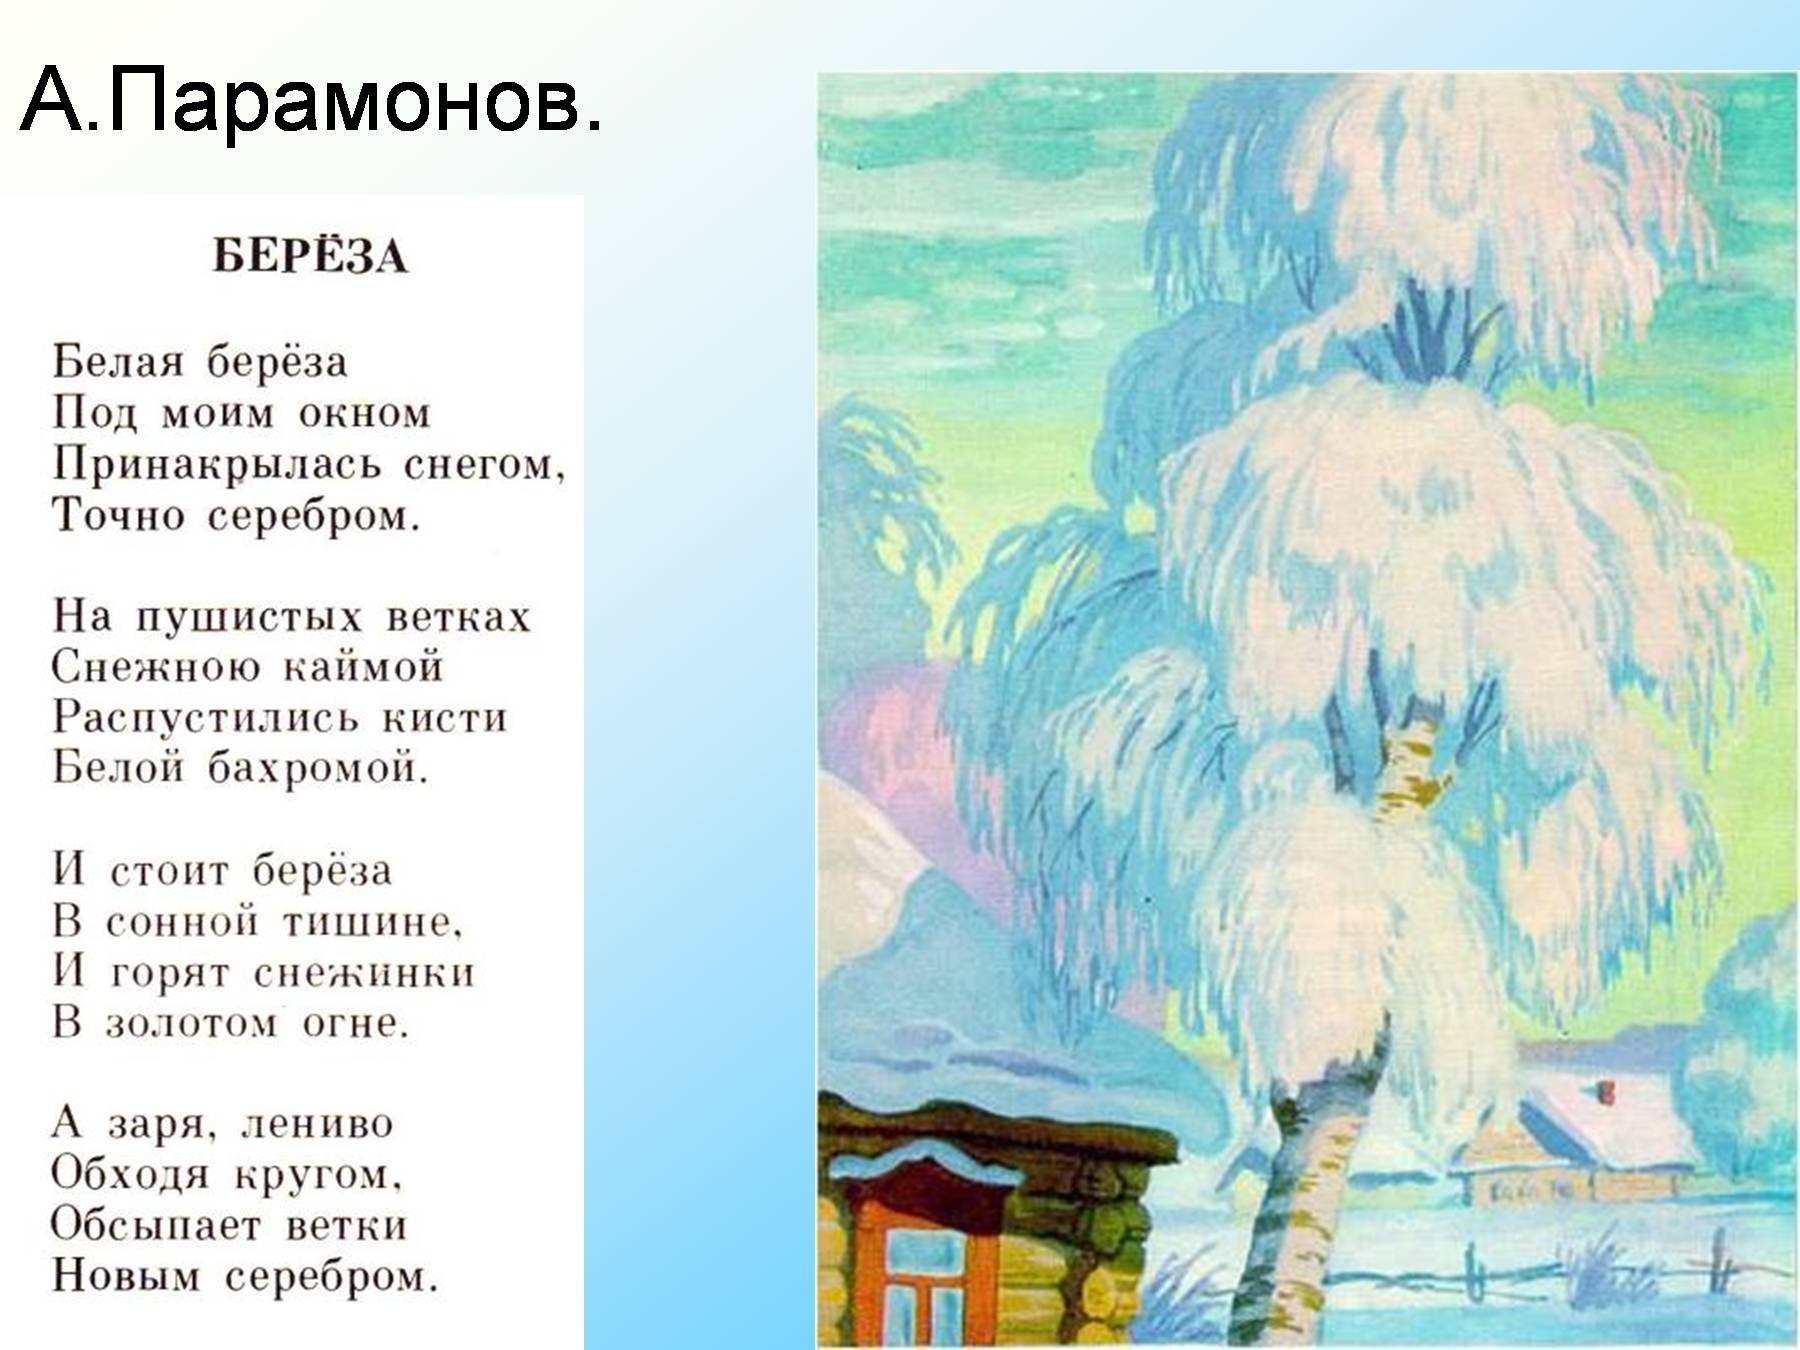 Иллюстрация к стихотворению Есенина береза